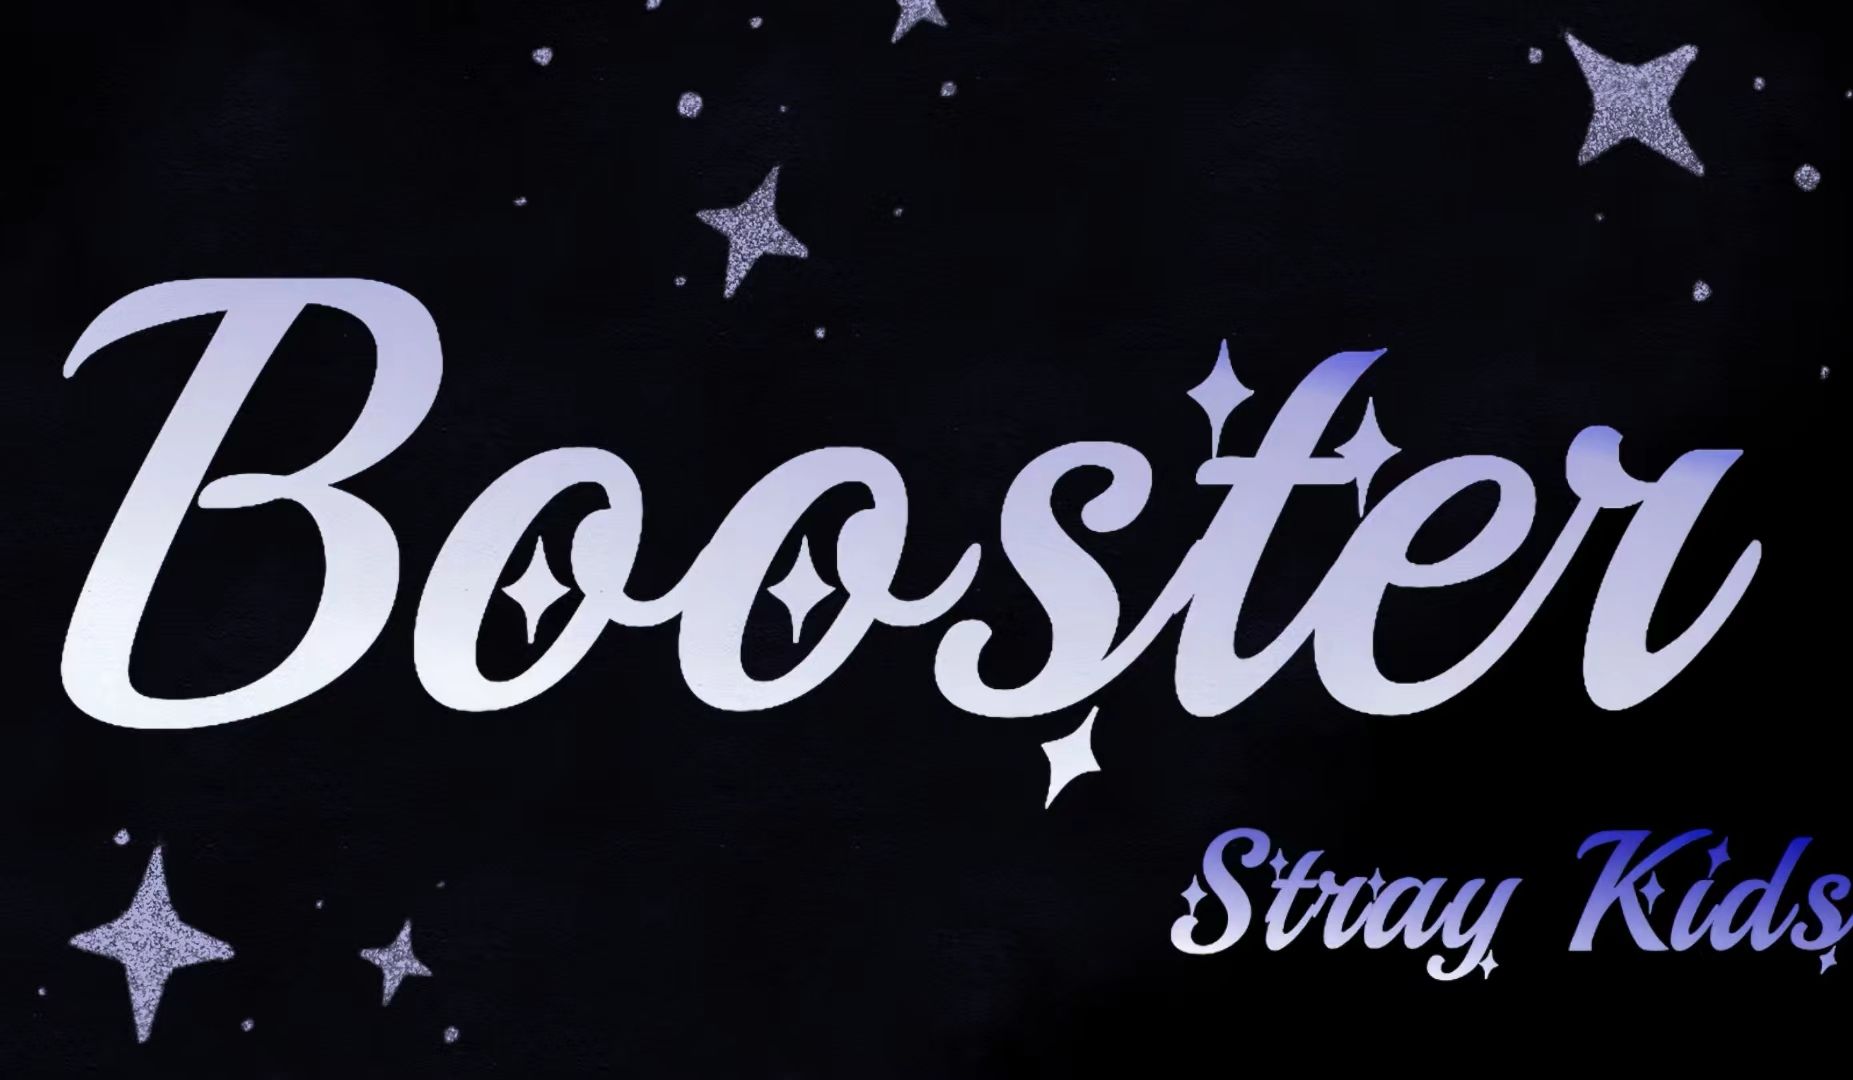 Stray Kids |《Booster》中字歌词 | 就算风暴肆虐 任由身体随着风 也要不断地向前冲